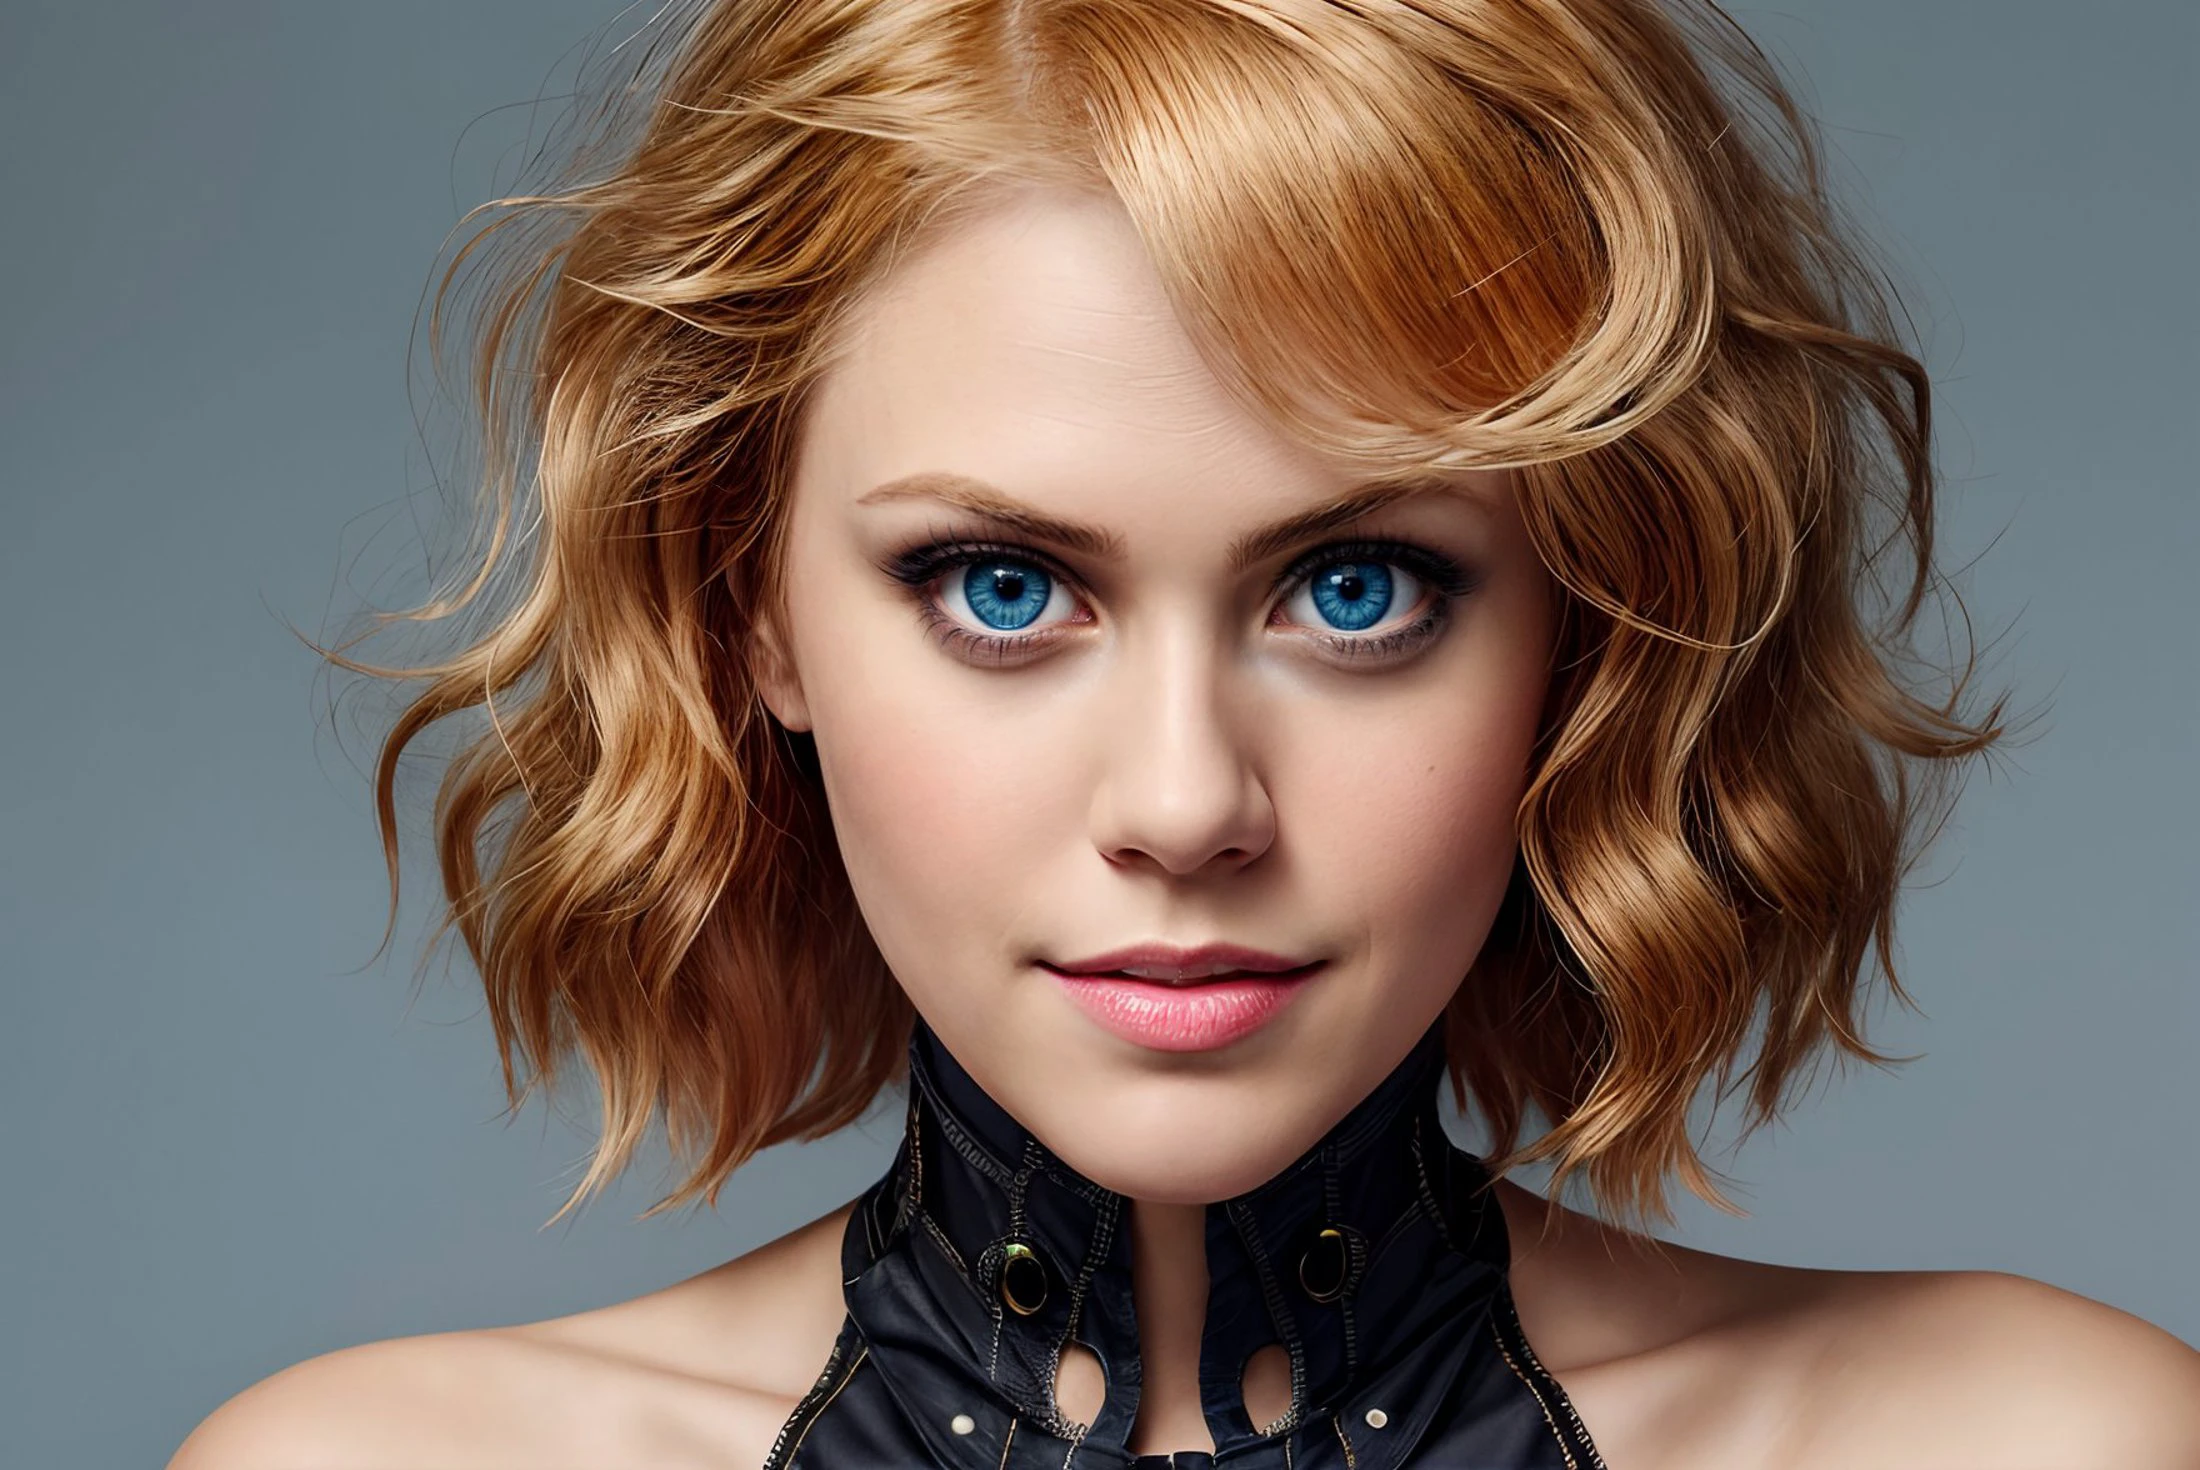 Hochwertiges Bild von Janetvarney, blonden Haaren, blauen Augen, Edgcorset  